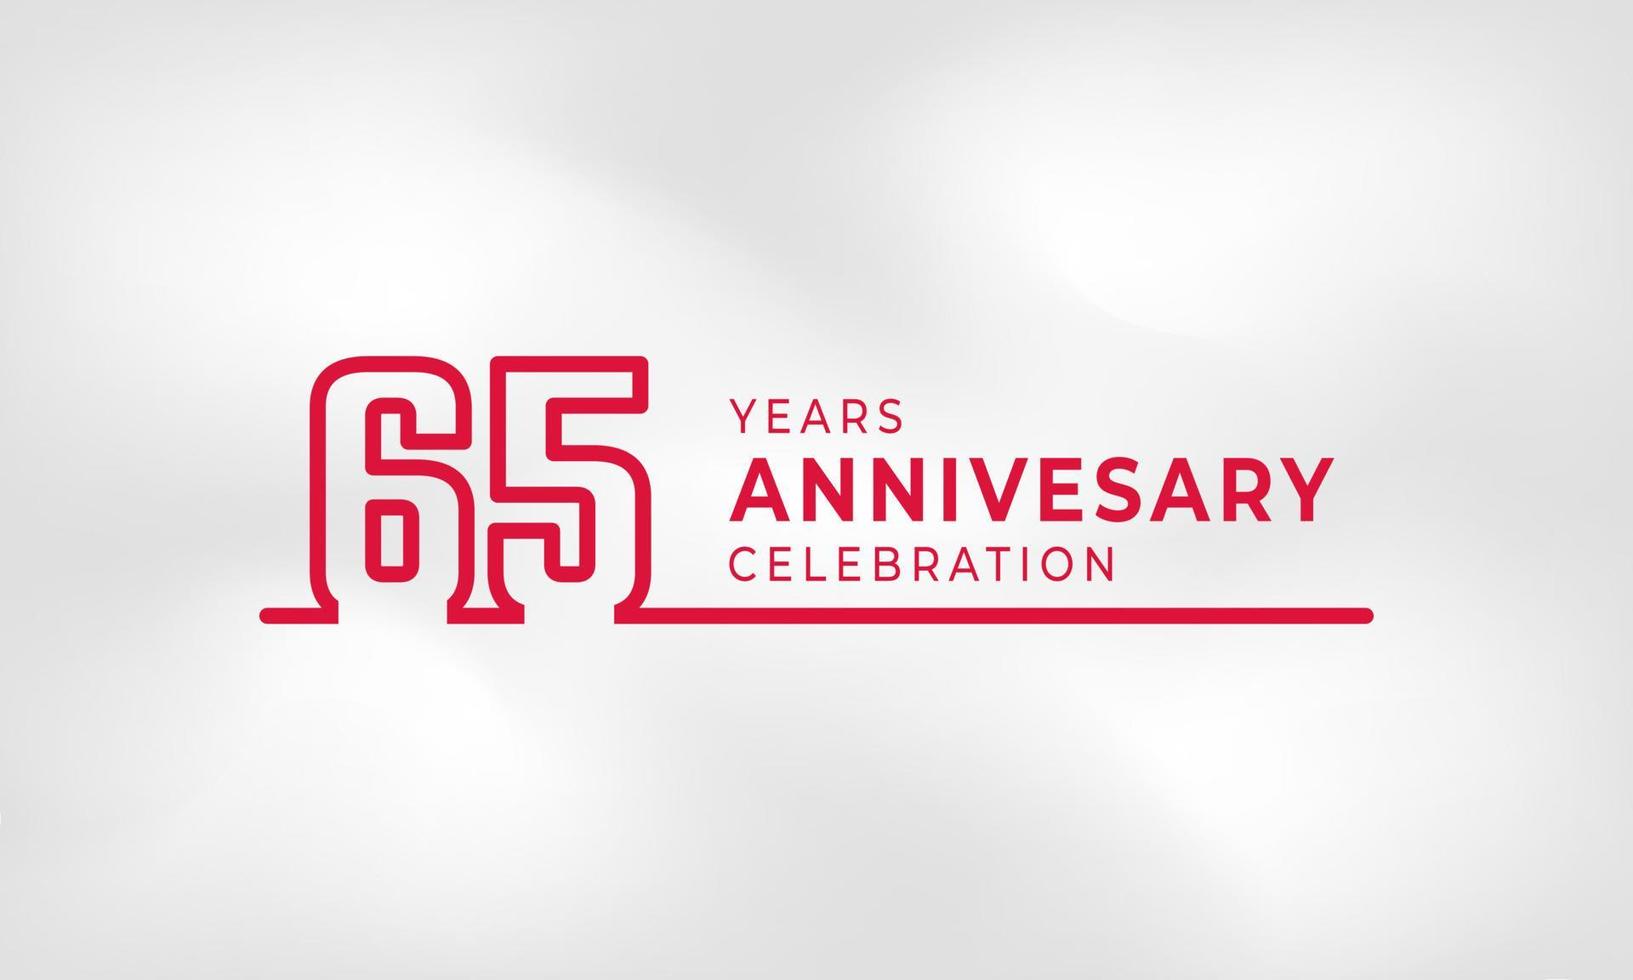 Celebración del aniversario de 65 años Número de esquema de logotipo vinculado color rojo para evento de celebración, boda, tarjeta de felicitación e invitación aislado en fondo de textura blanca vector